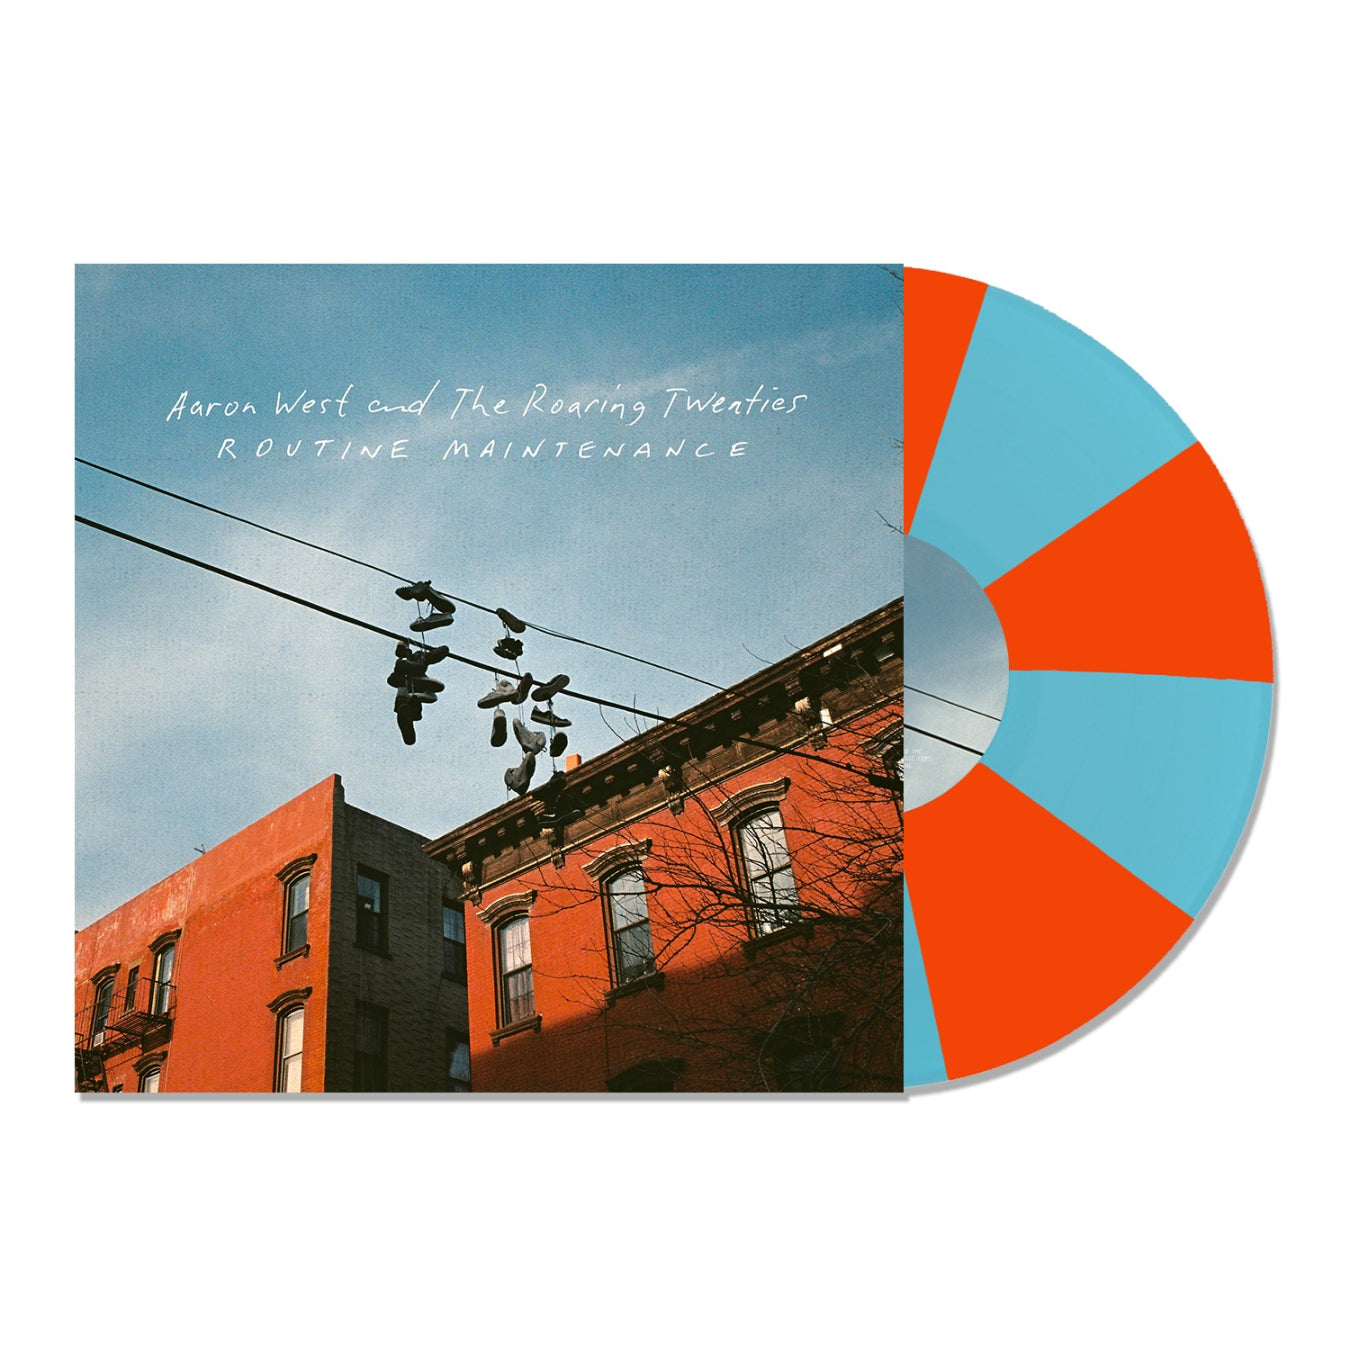 Aaron West and The Roaring Twenties - Routine Maintenance: Limited Blue + Orange Pinwheel Vinyl LP